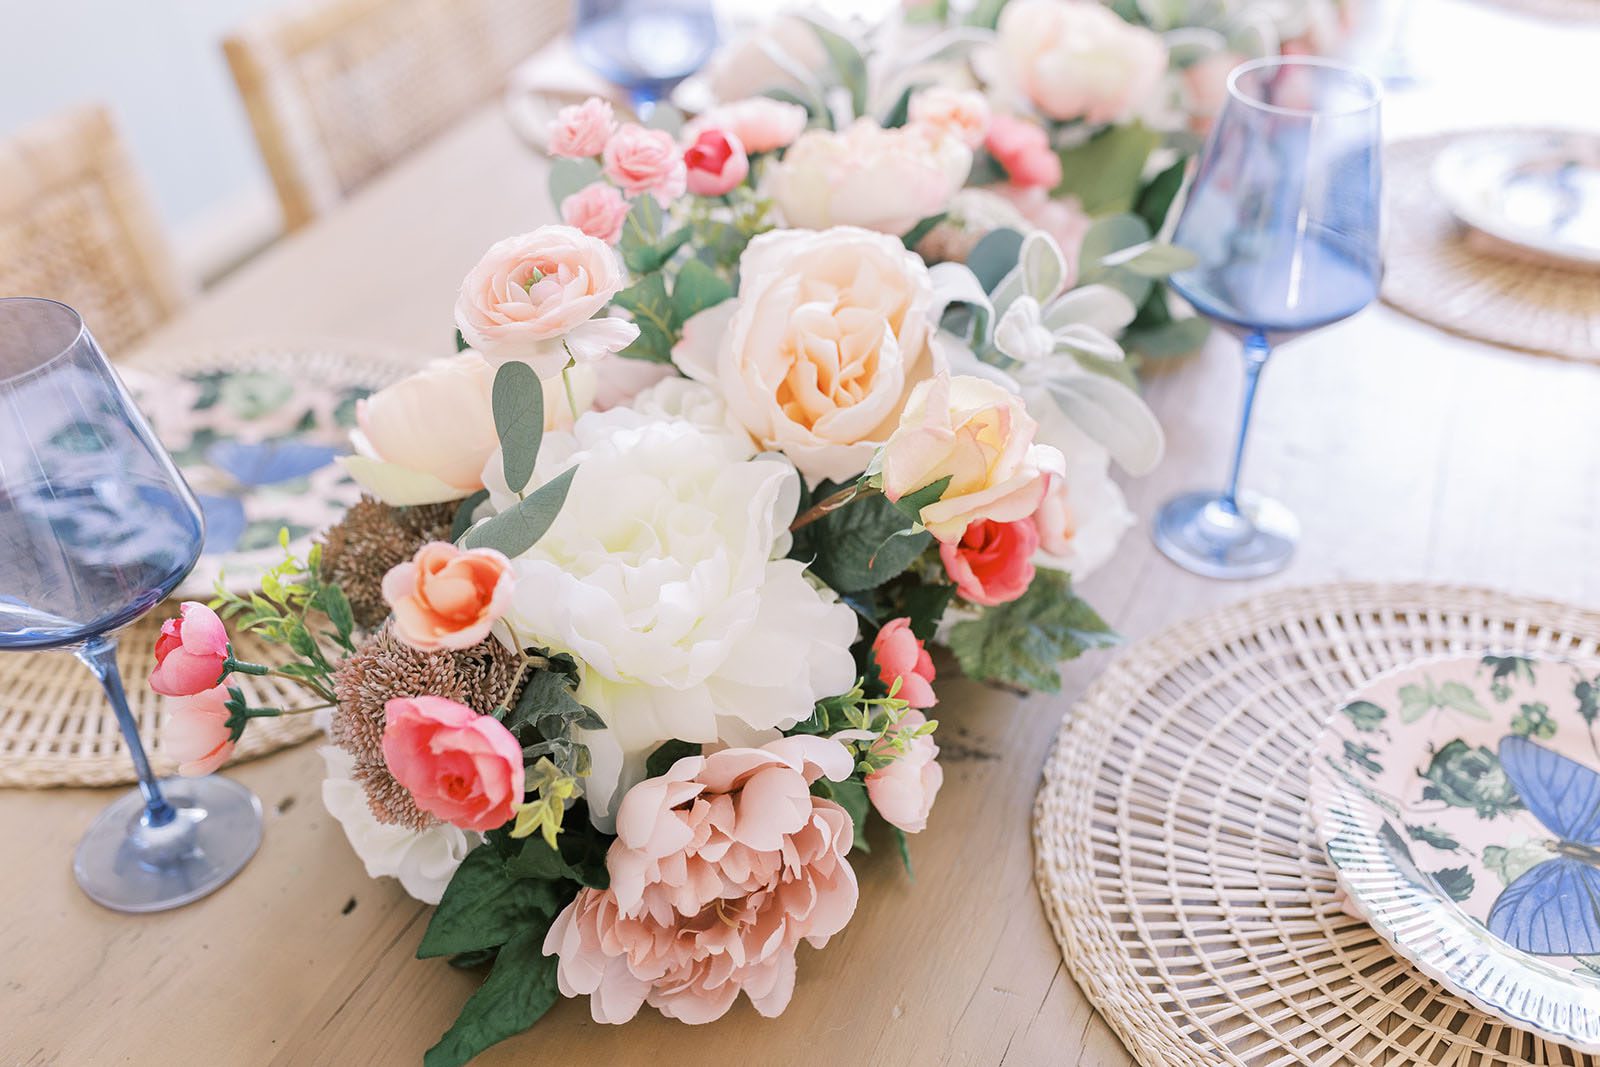 Nên dùng hoa tươi hay hoa lụa để trang trí tiệc cưới? Lựa chọn nào tốt hơn?